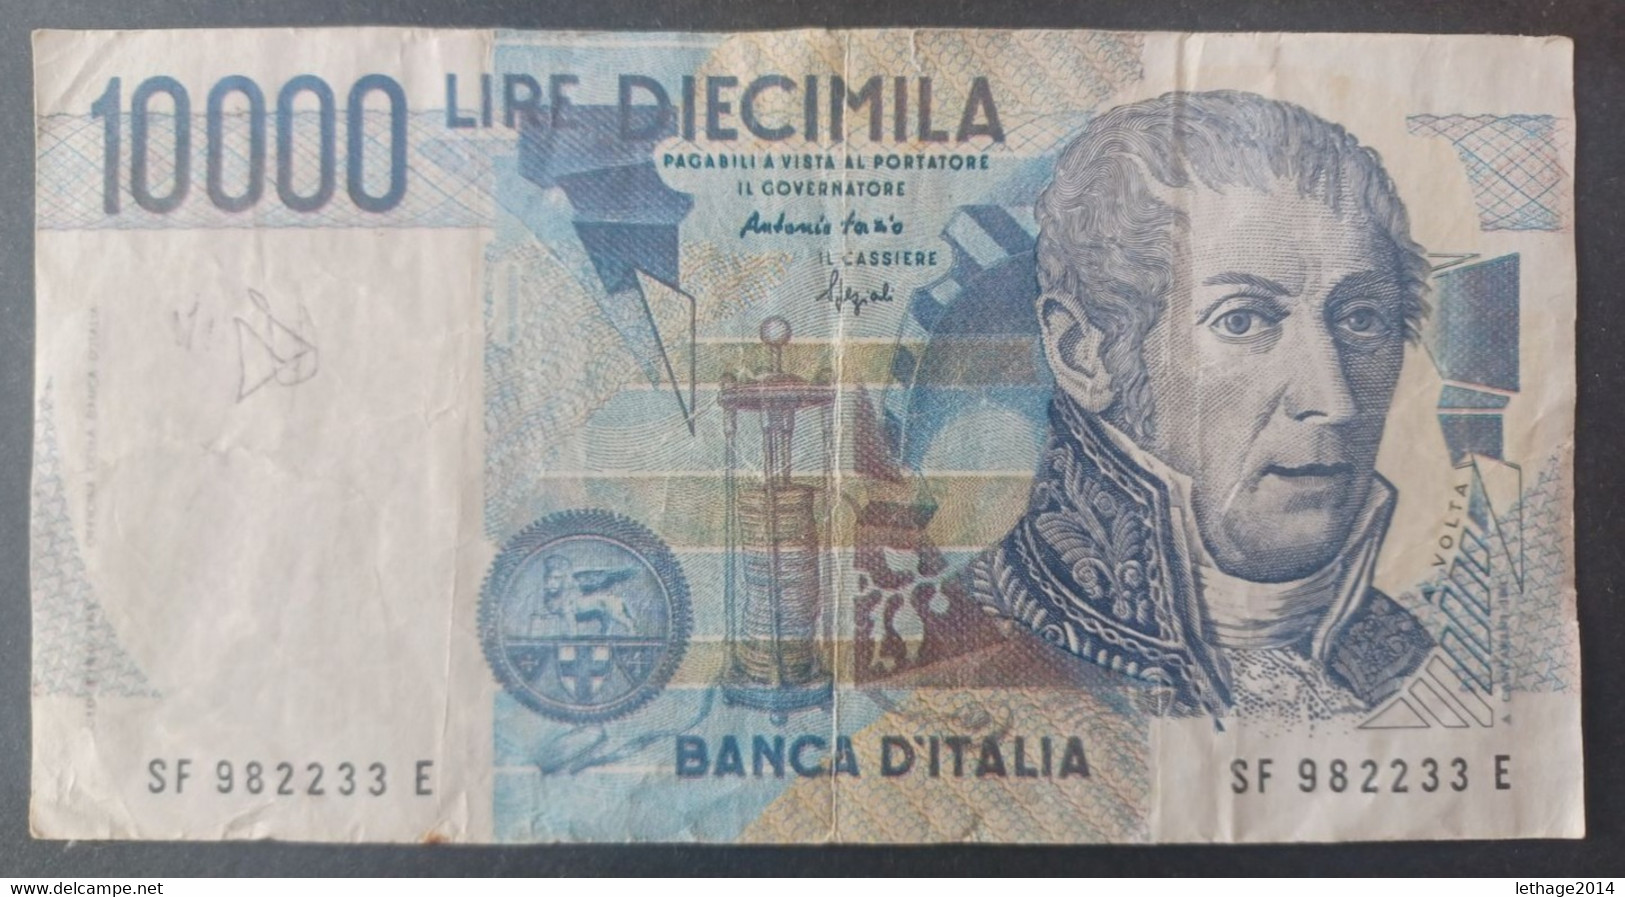 BANKNOTE ITALIA 10000 LIRE 1994 FAZIO SPEZIALI CIRCULATED - 10000 Lire